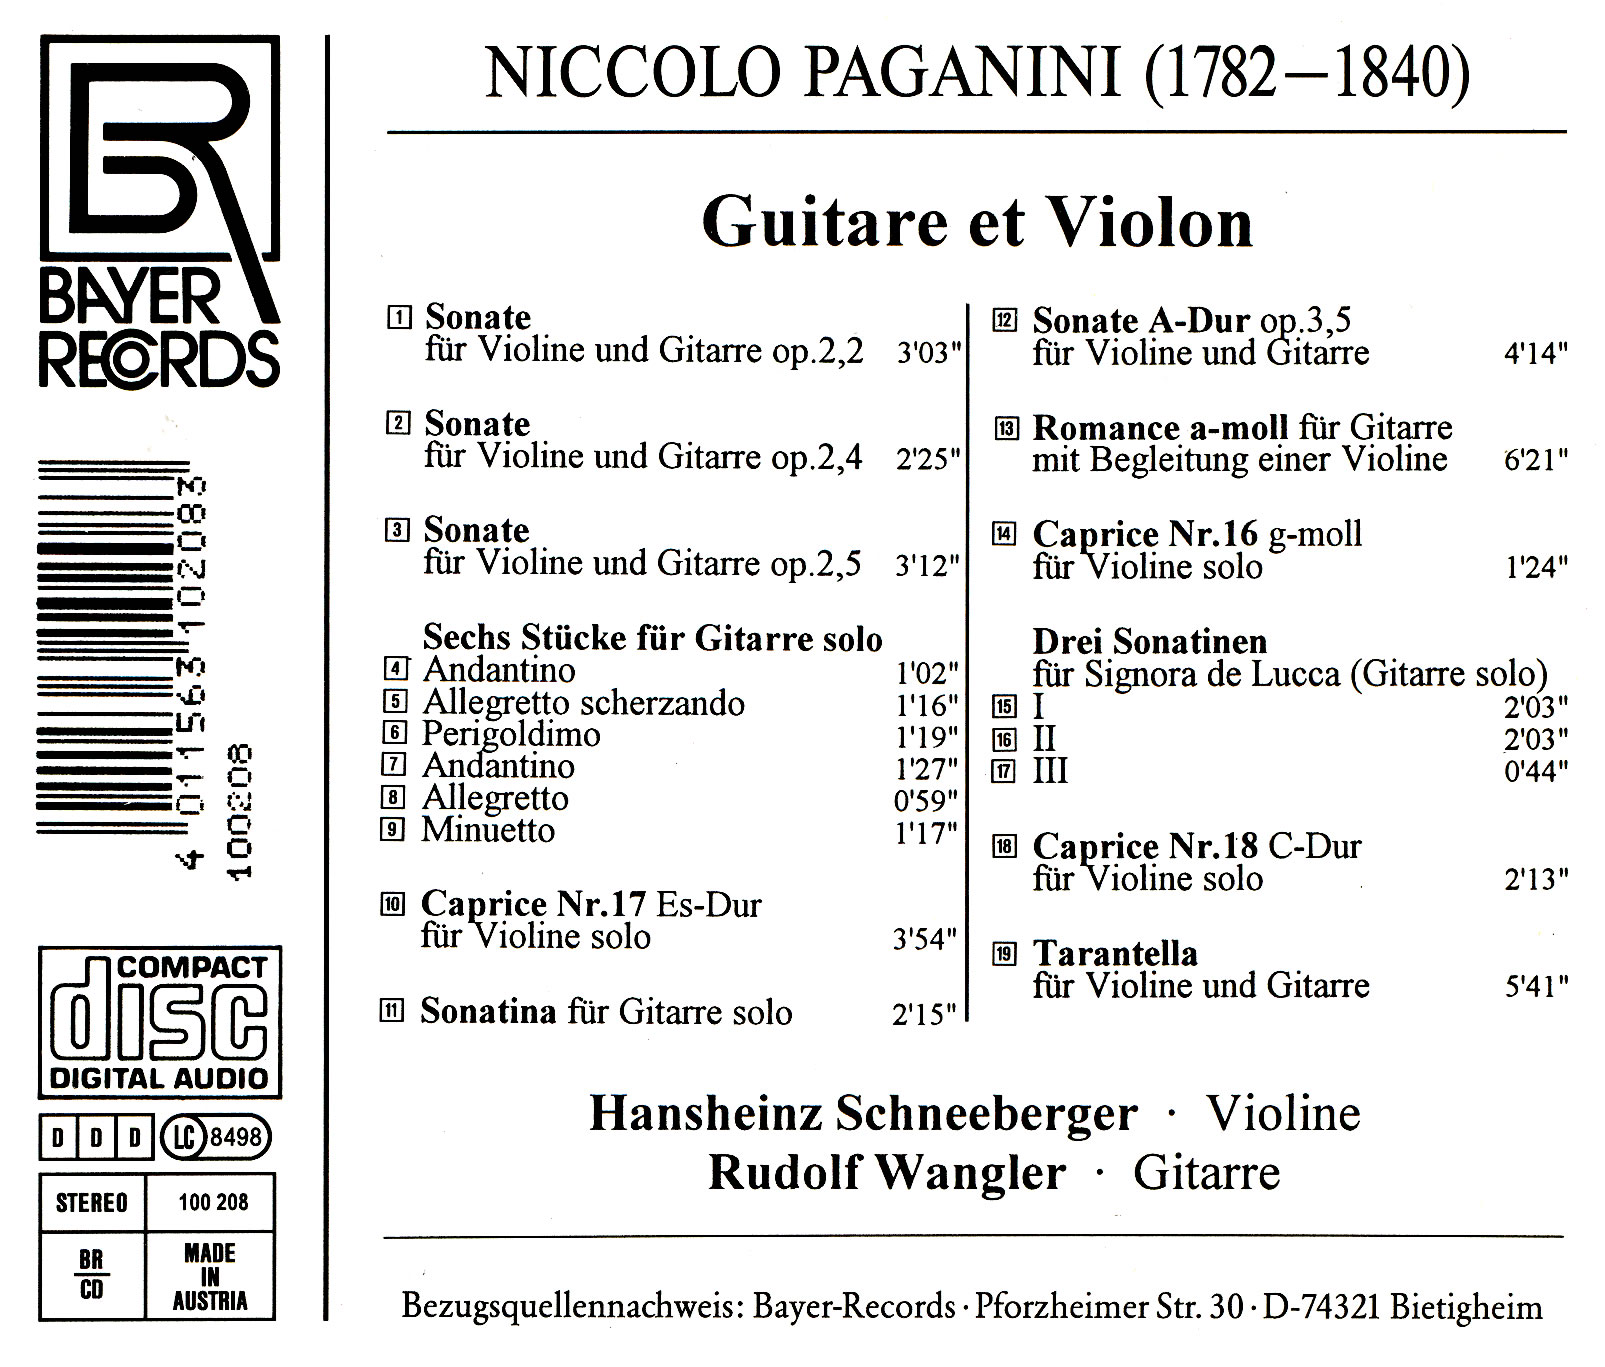 Niccolo Paganini - Guitar et Violon